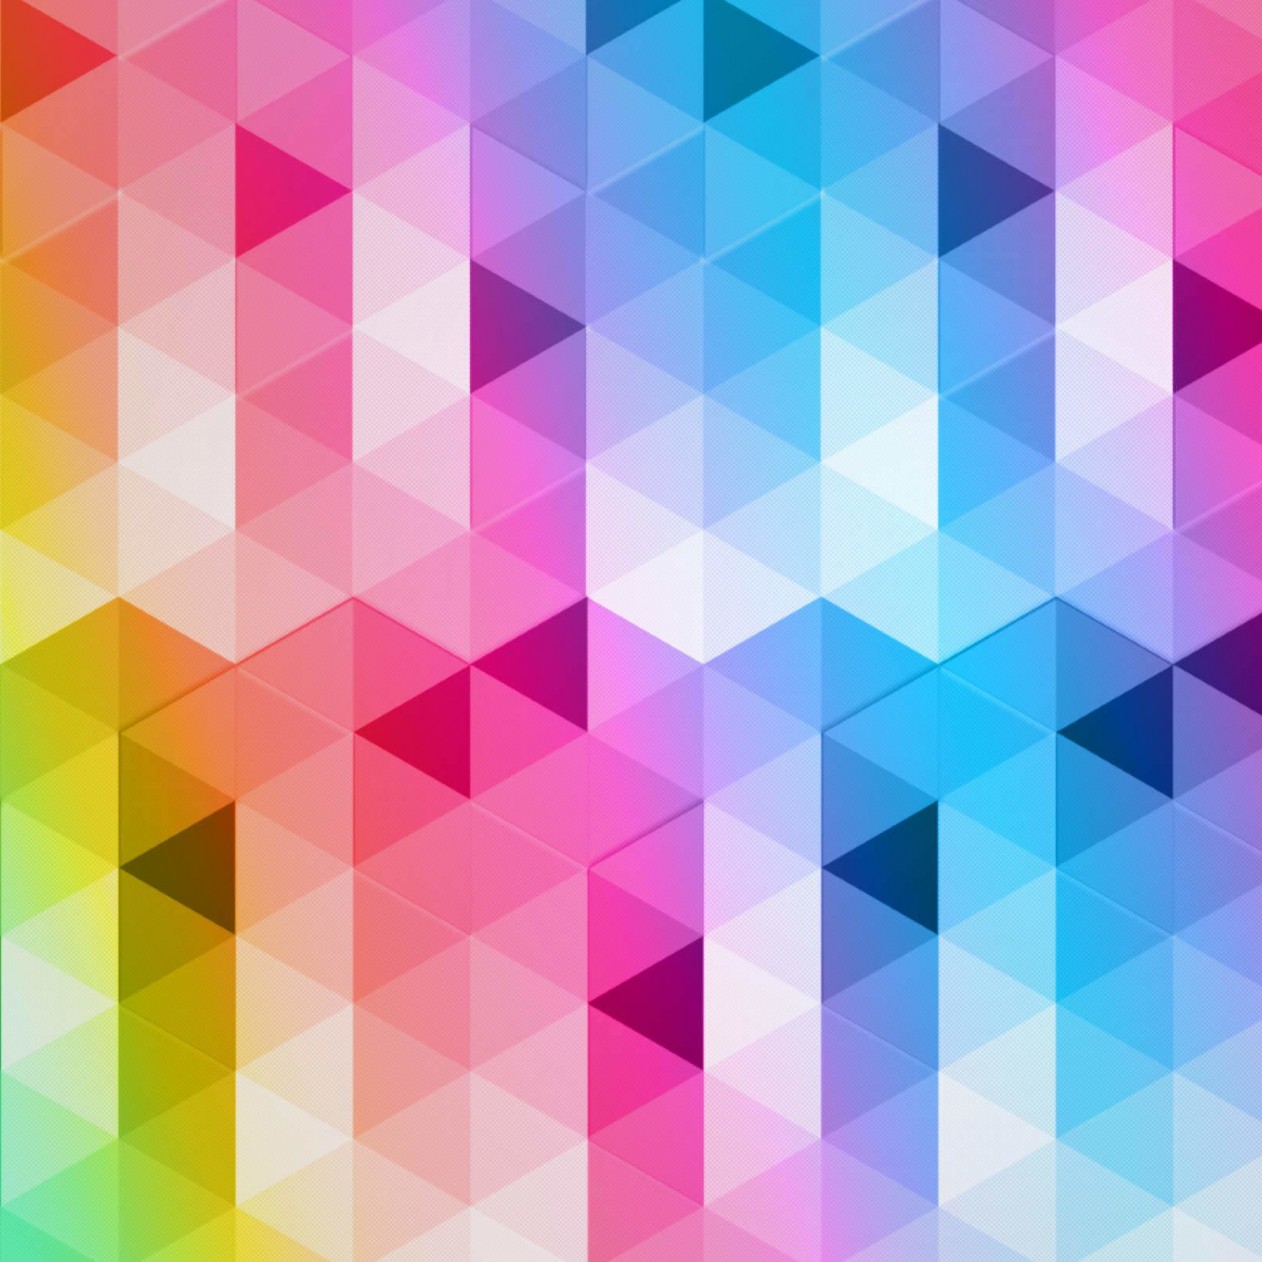 Triangular Grads Wallpaper for Apple iPad mini